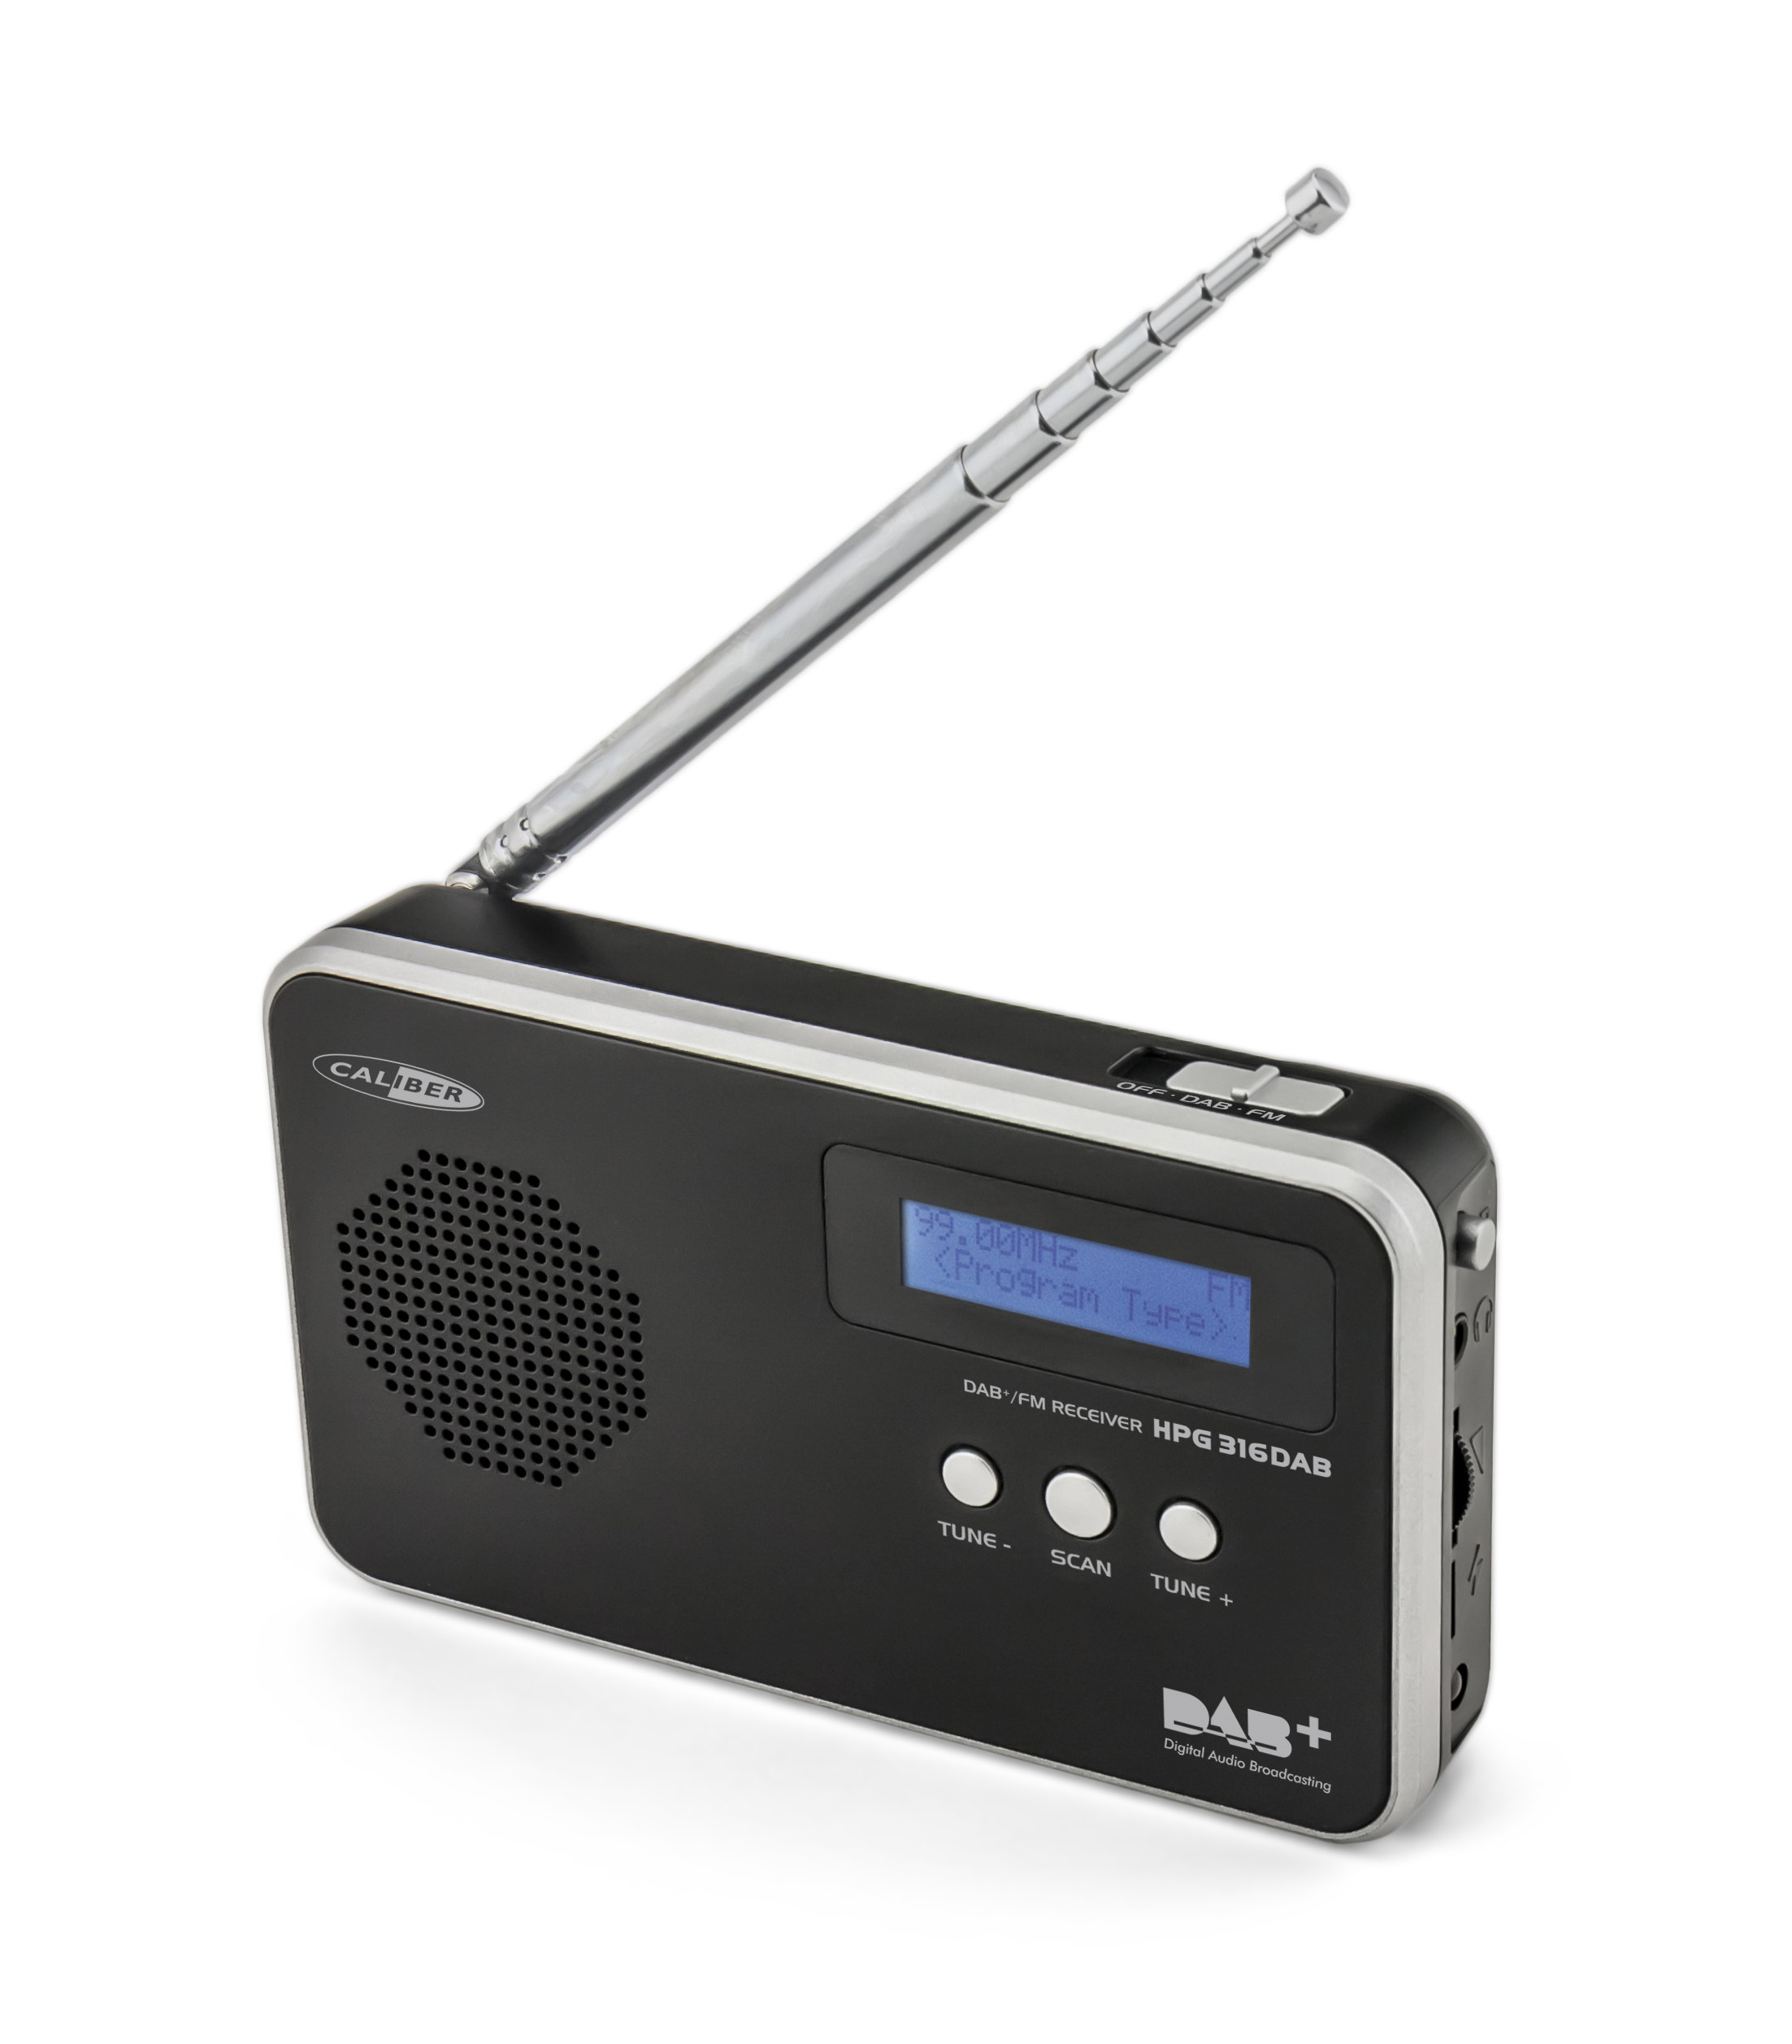 CALIBER HPG316DAB/B DAB+ DAB+, FM, Radio, Schwarz portable